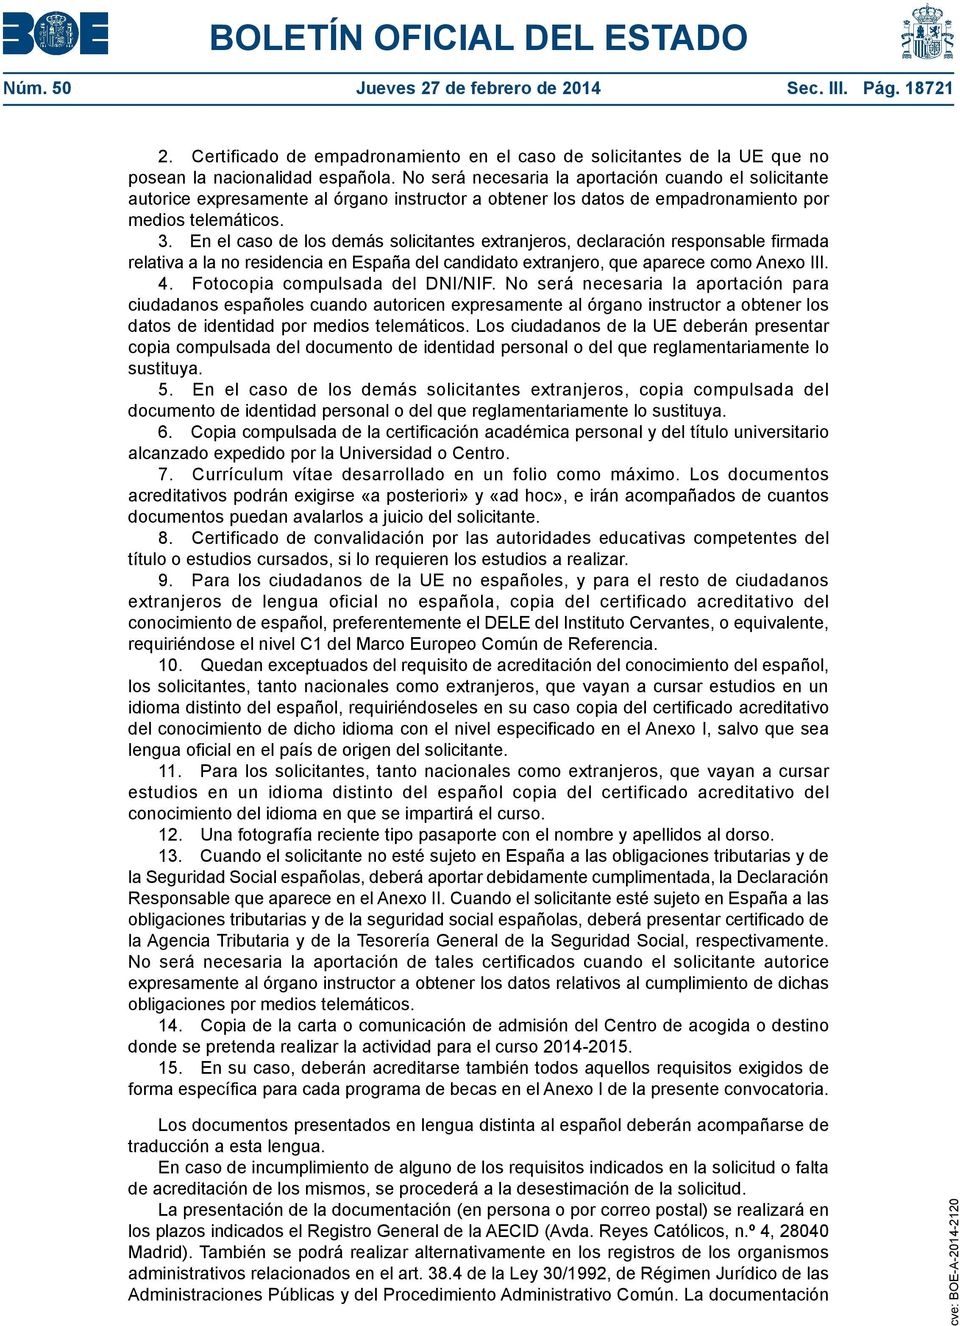 En el caso de los demás solicitantes extranjeros, declaración responsable firmada relativa a la no residencia en España del candidato extranjero, que aparece como Anexo III. 4.